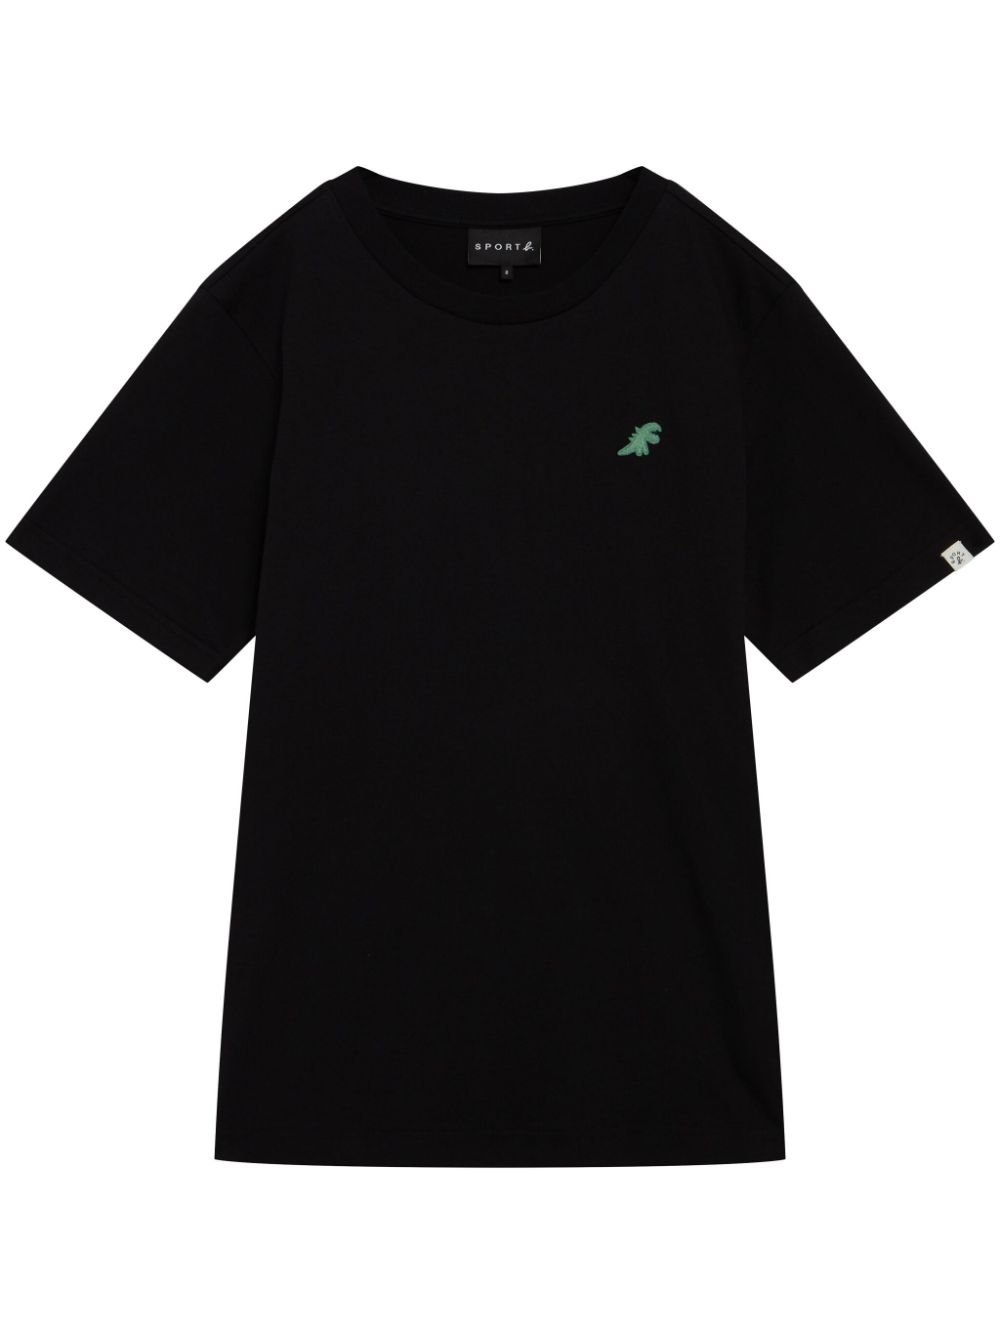 SPORT b. by agnès b. Dino-appliqué cotton T-shirt - Black von SPORT b. by agnès b.